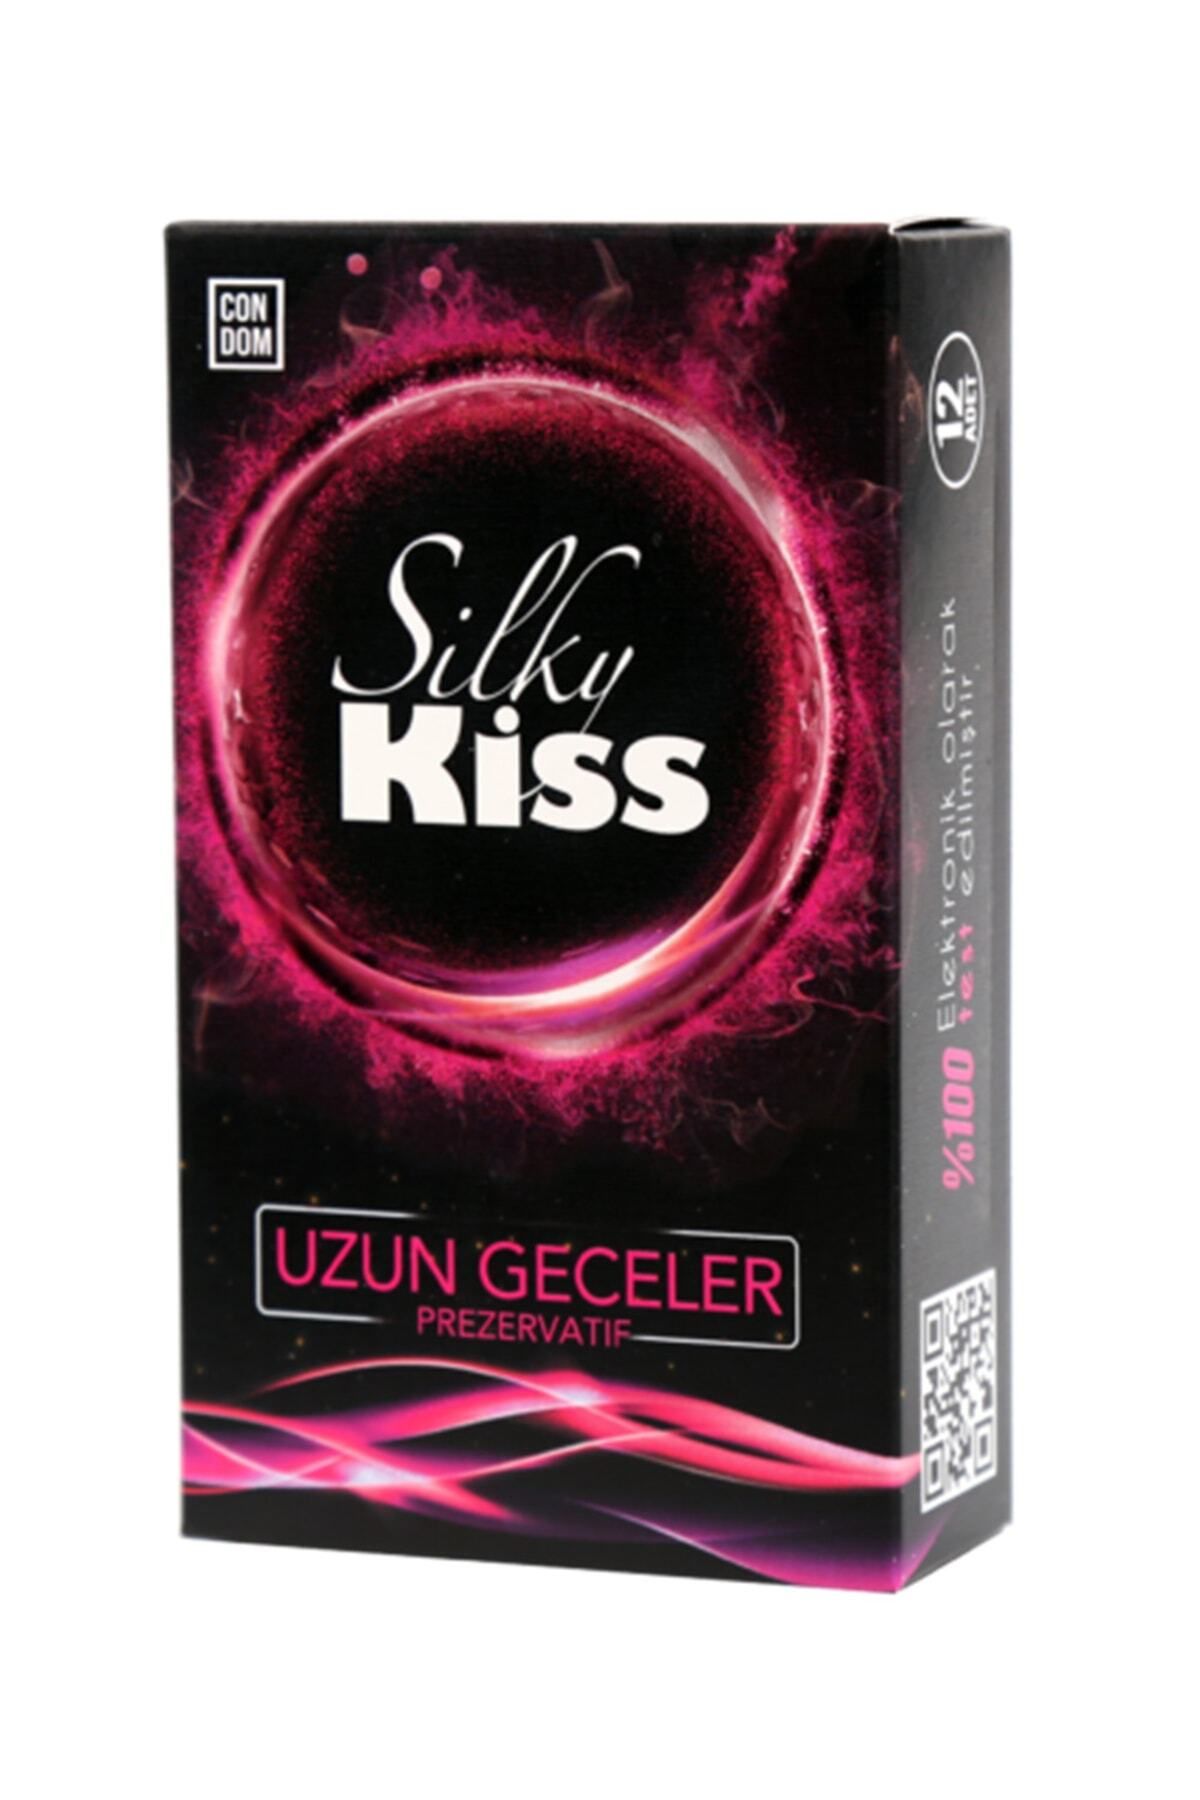 Silky Kiss Uzun Geceler Prezervatif